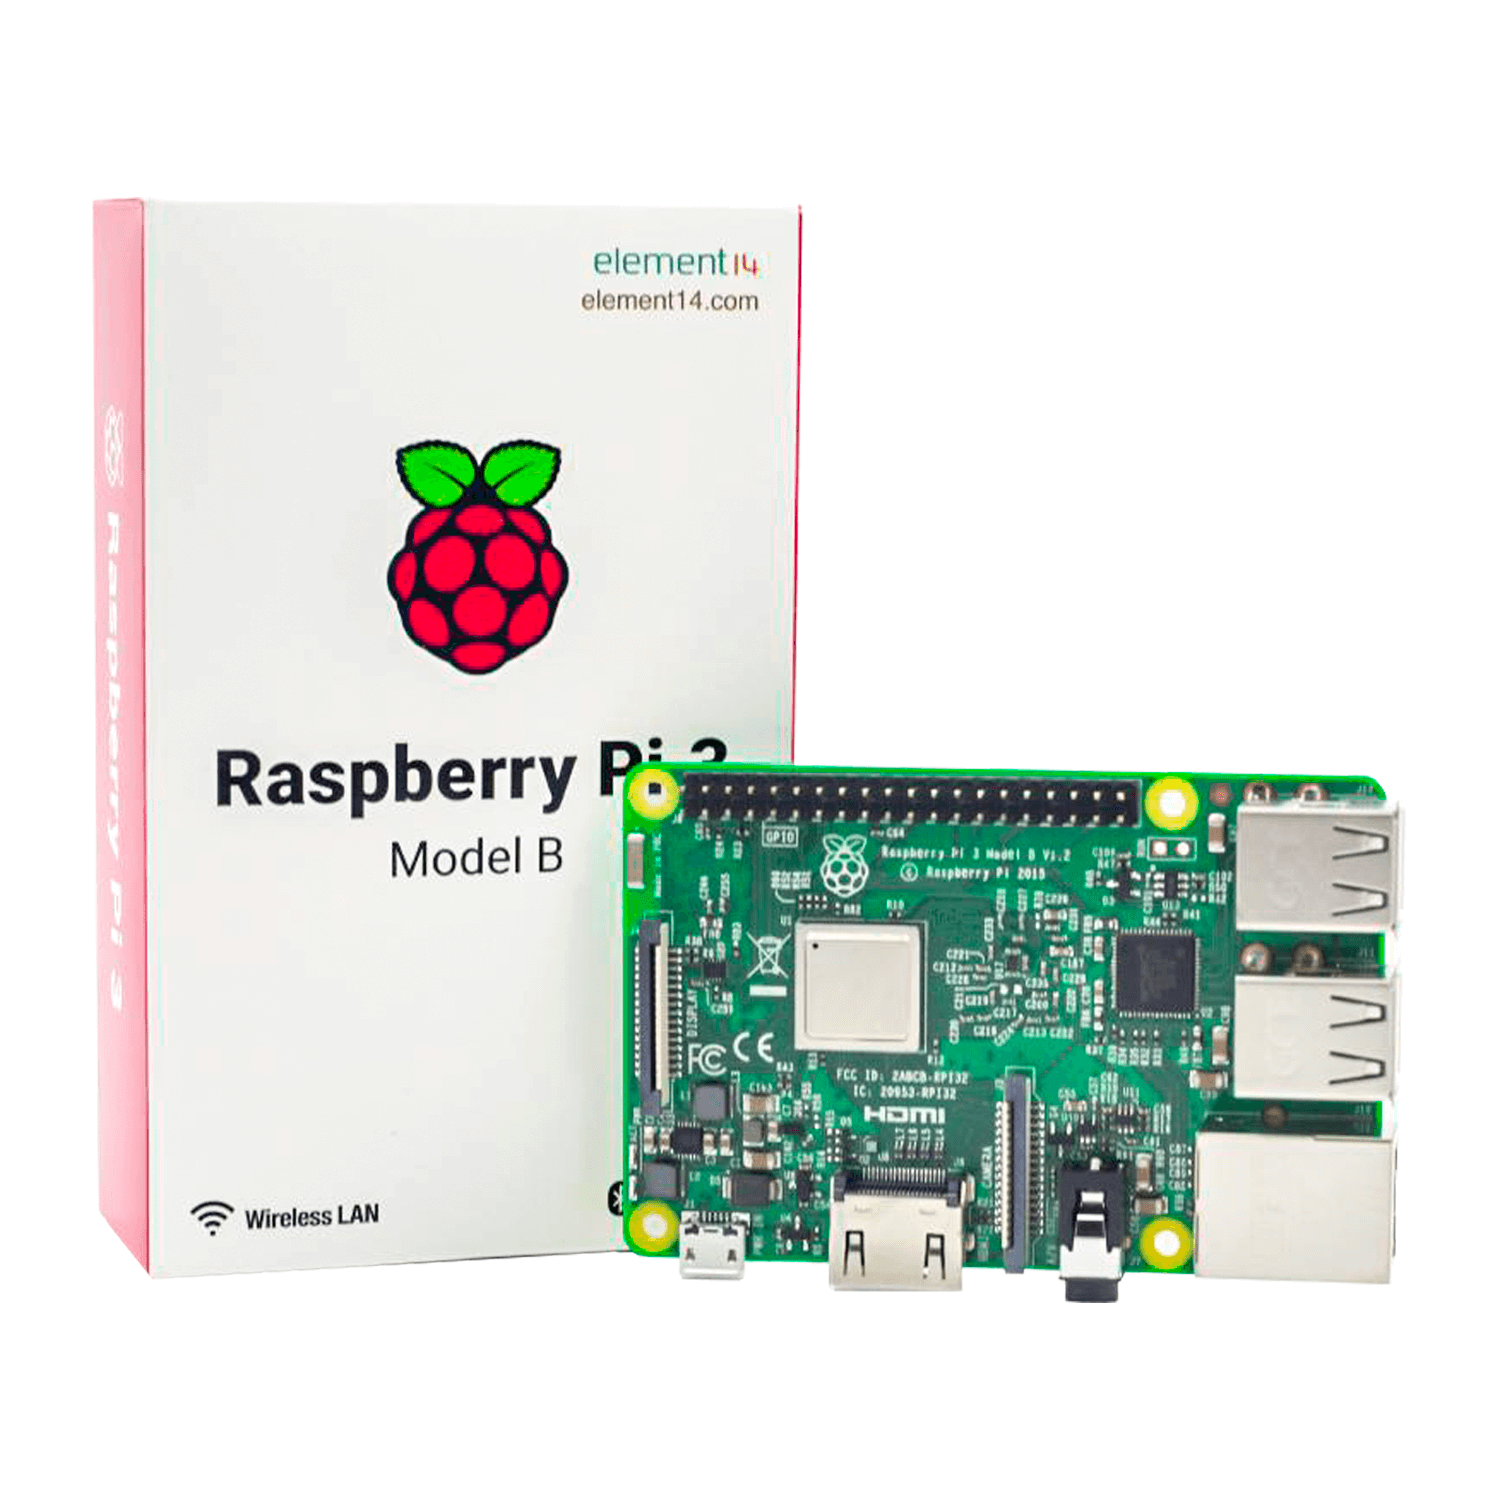 Mini PC Raspberry Pi 3 B V1.2 UK - (182-6547)